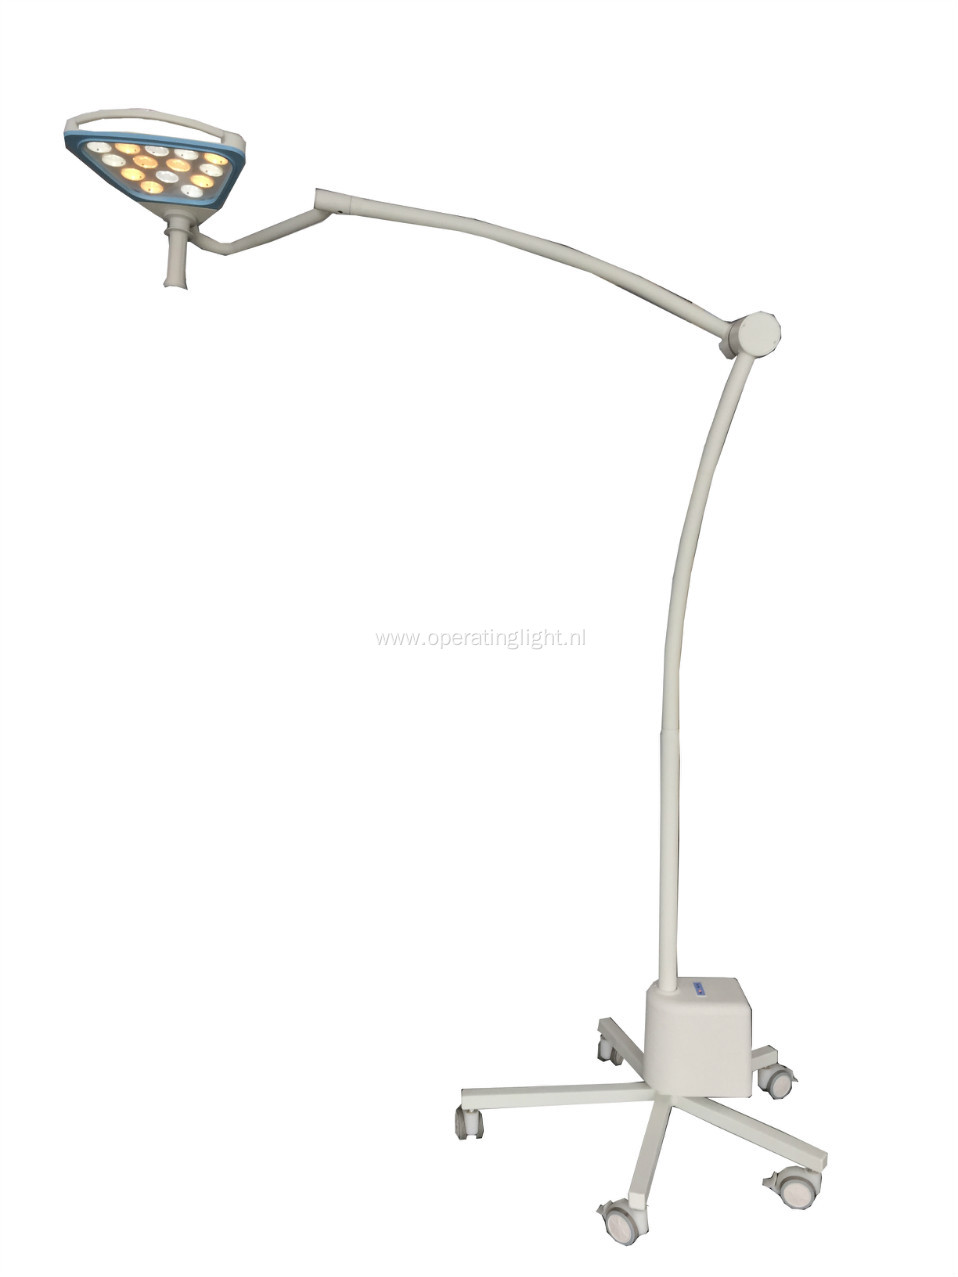 Portable beauty examination lamp